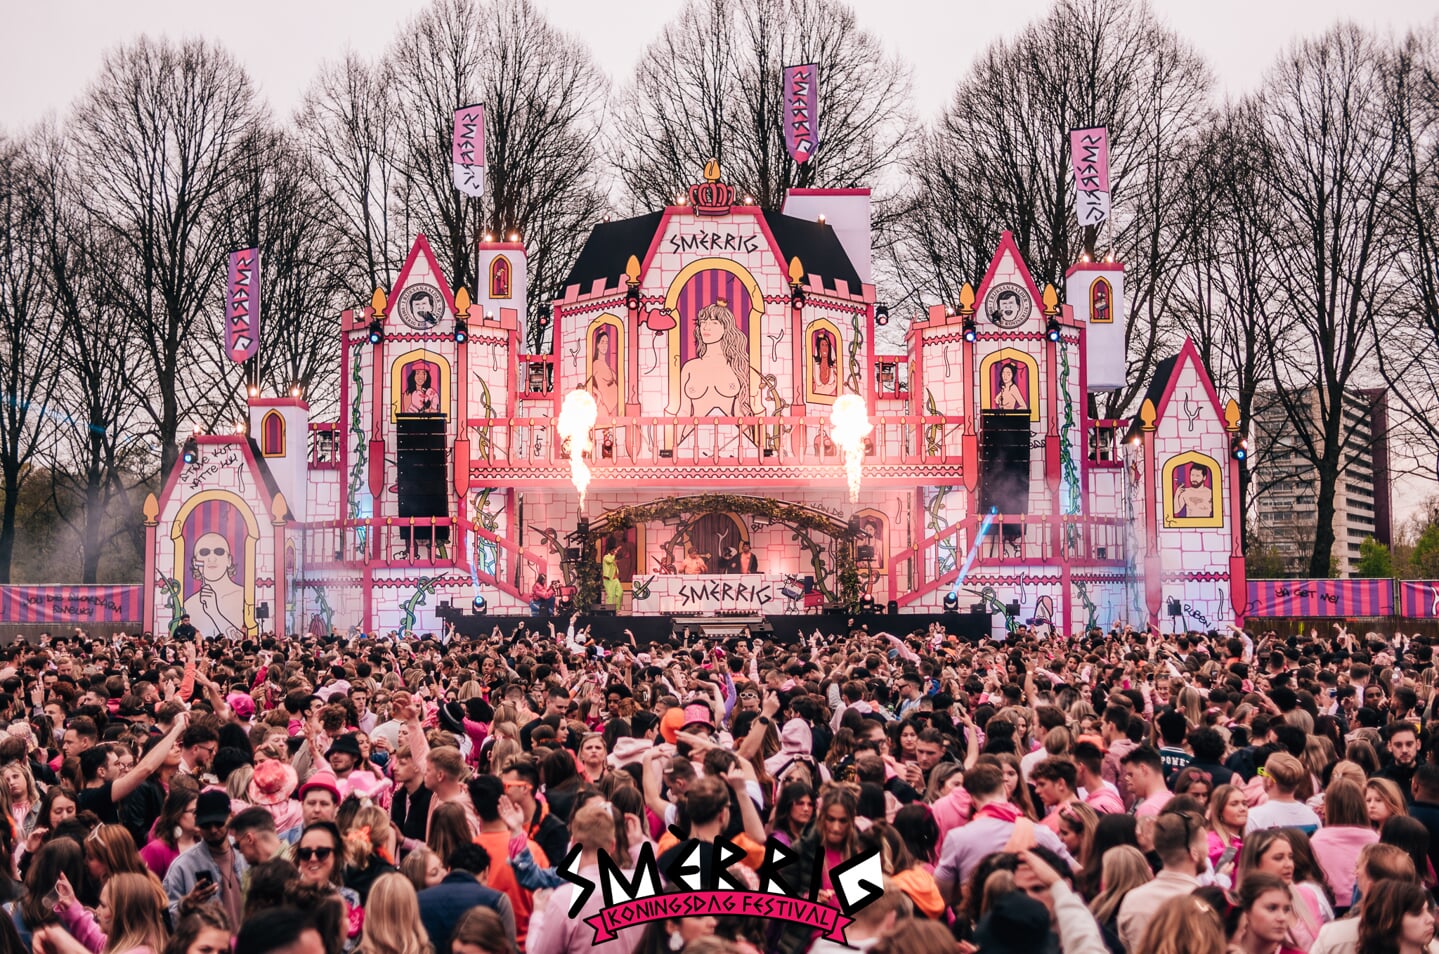 Den Bosch kleurt weer roze tijdens de derde editie van SMÈRRIG Koningsdag Festival op De Pettelaarse Schans. 